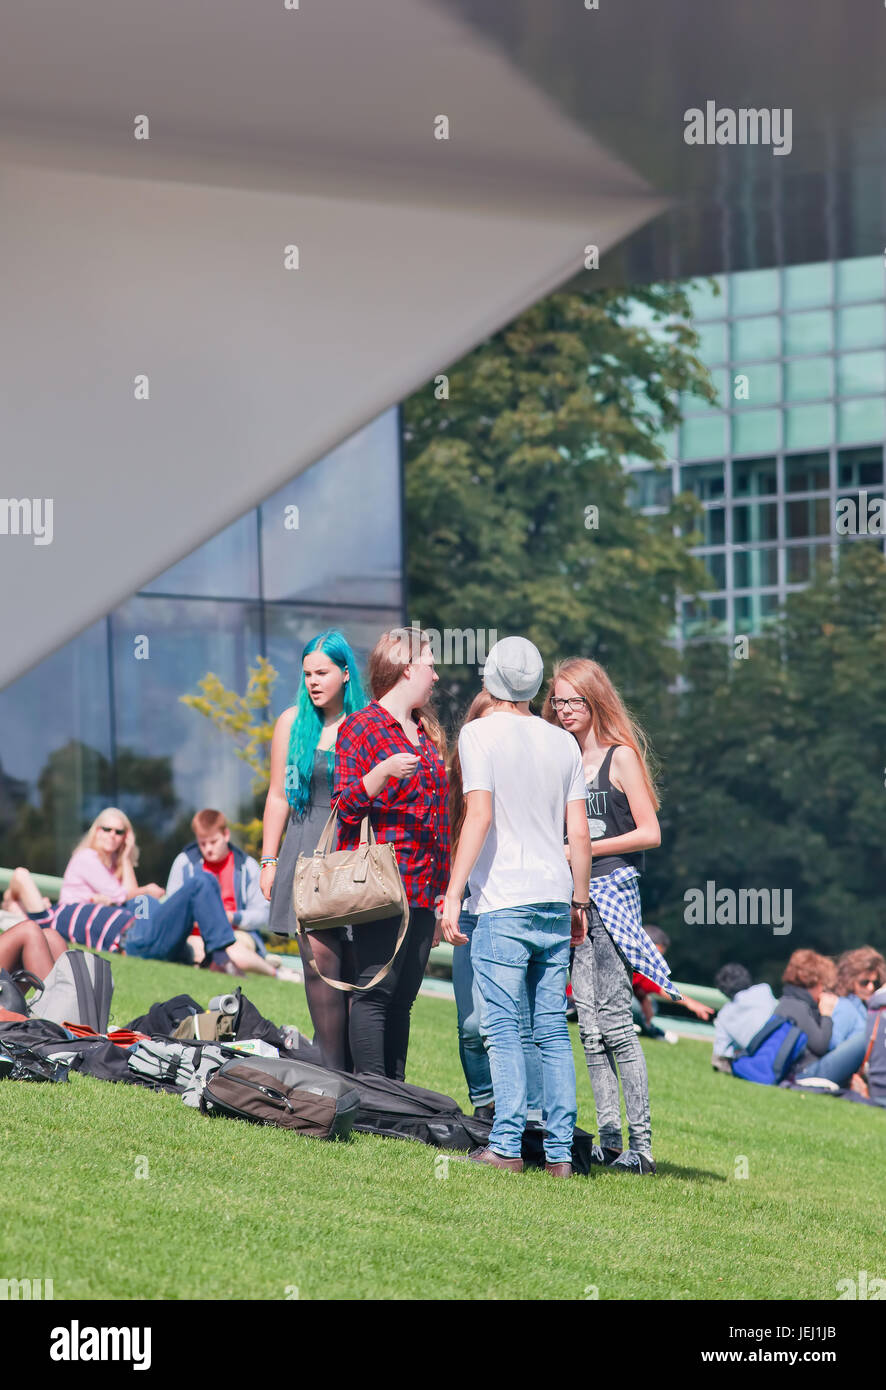 AMSTERDAM-24 AGOSTO 2014. Gruppo di giovani sulla Piazza del Museo. E' una piazza turistica molto popolare dove si trovano molti famosi musei. Foto Stock